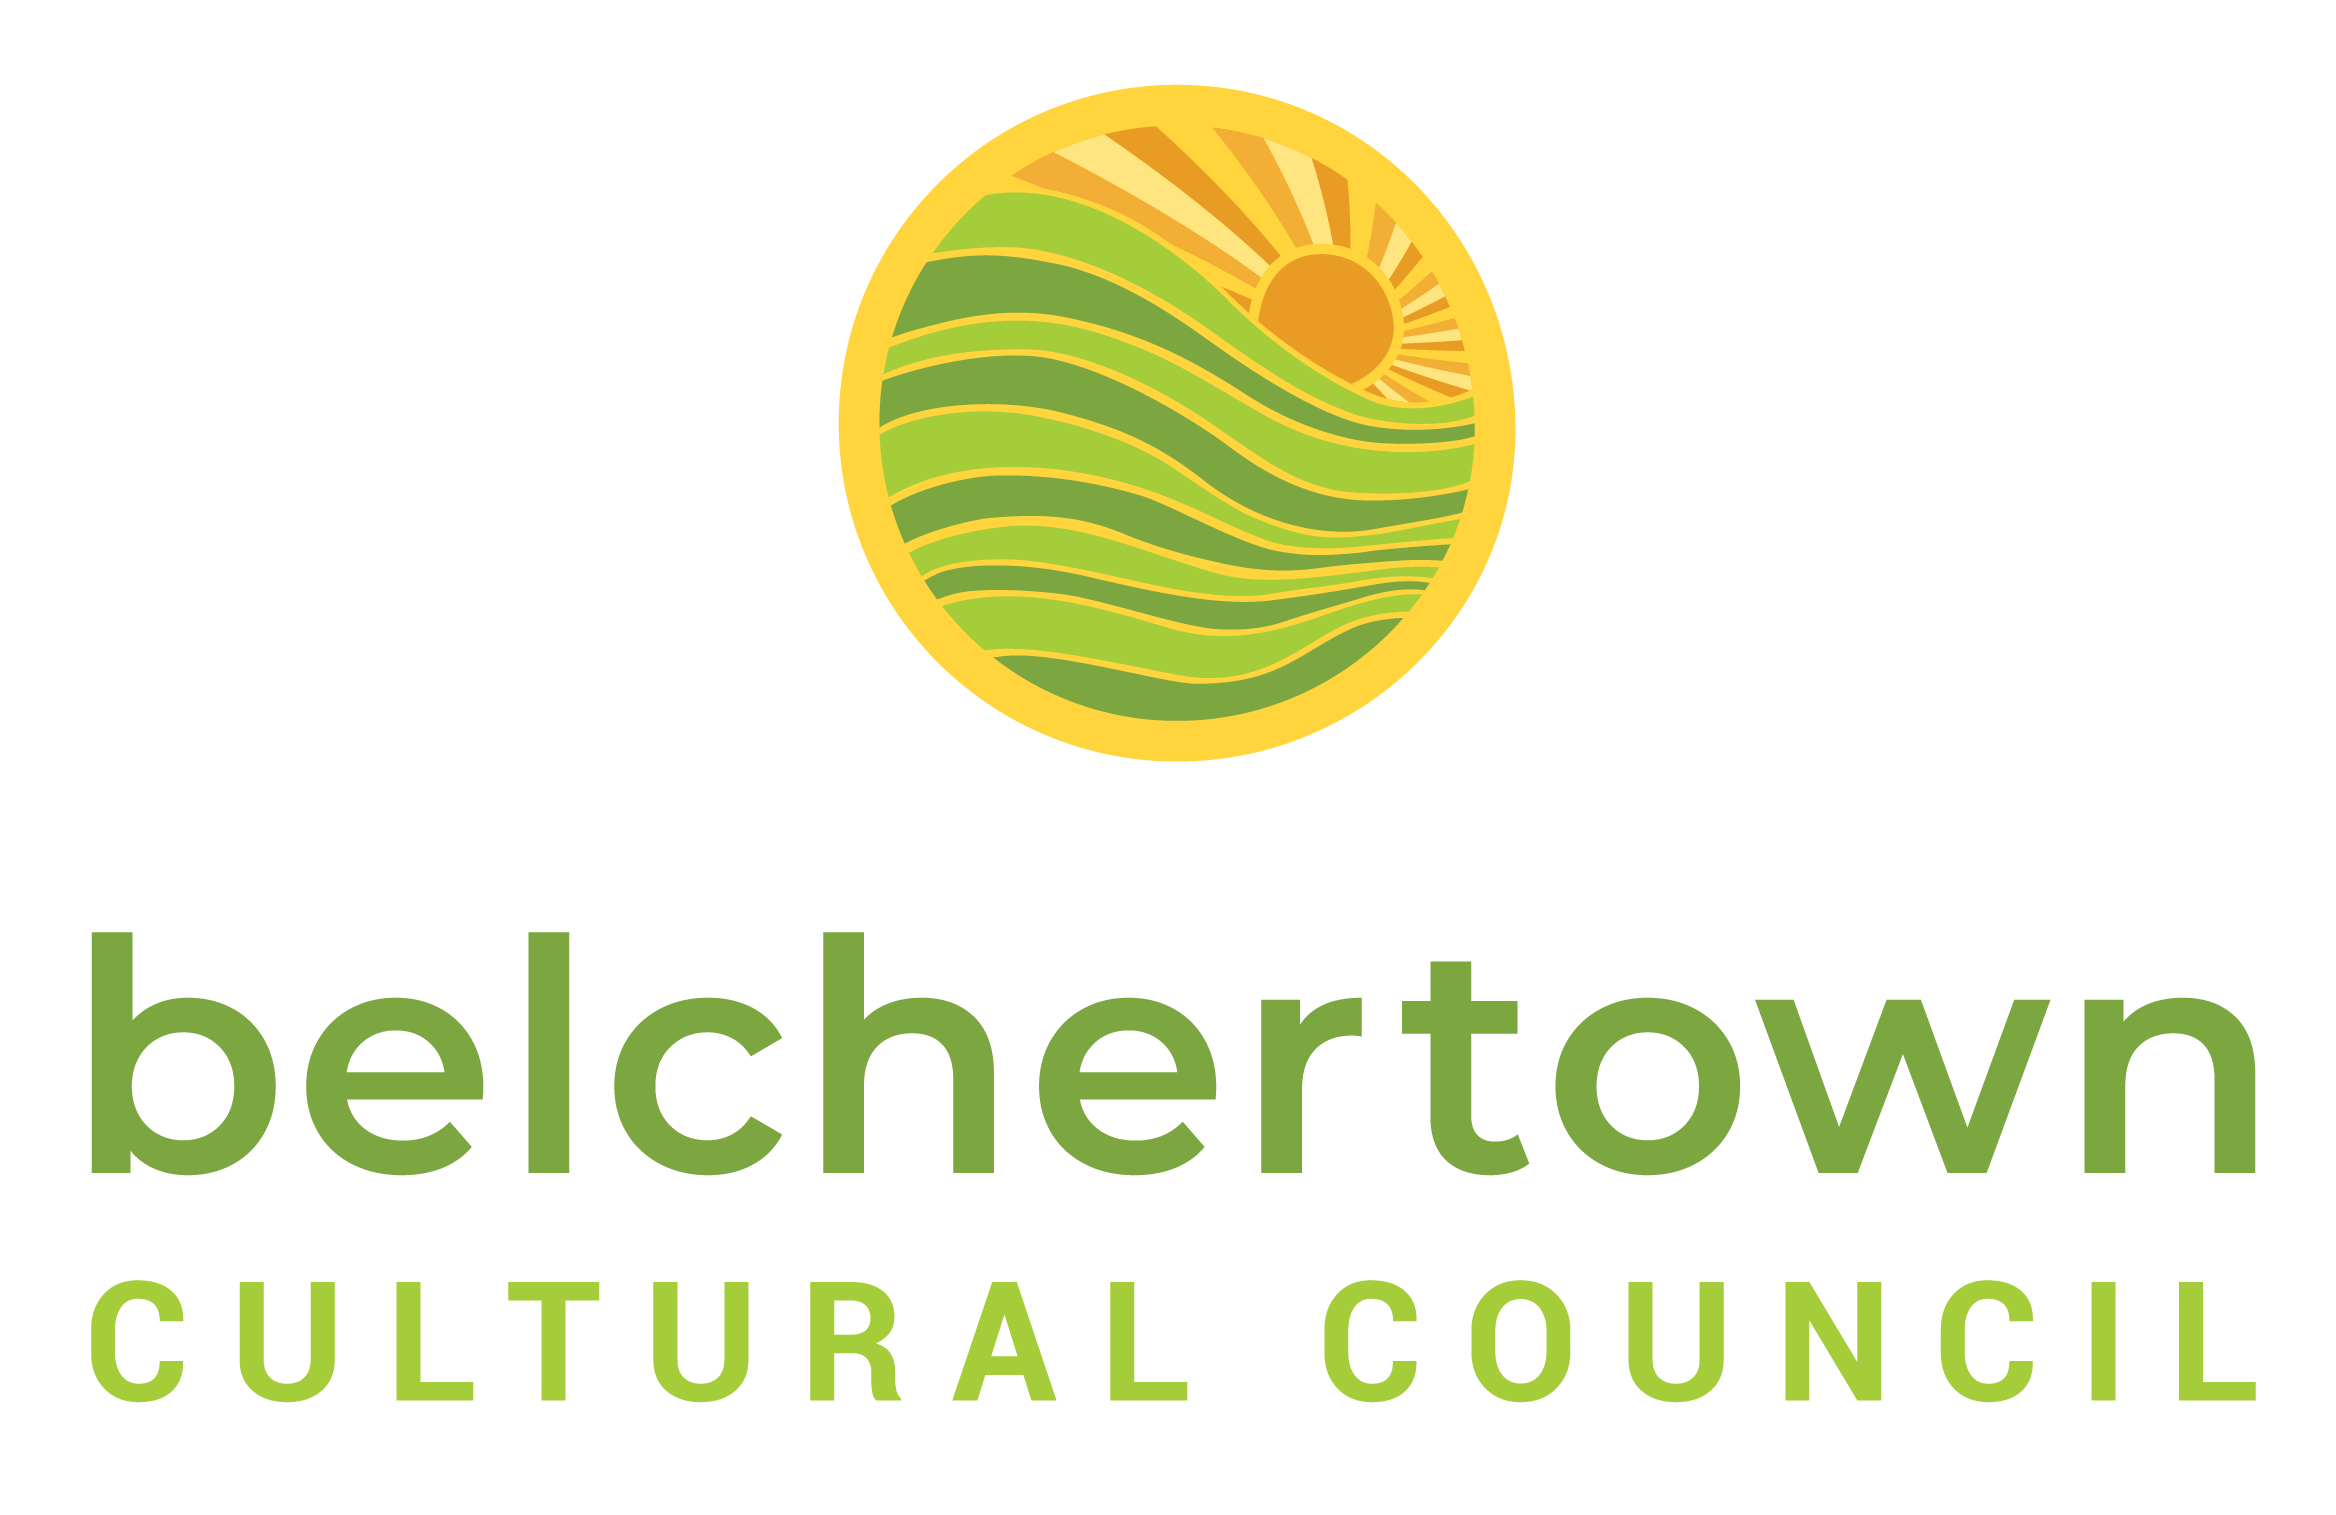 Belchertown Cultural Council logo